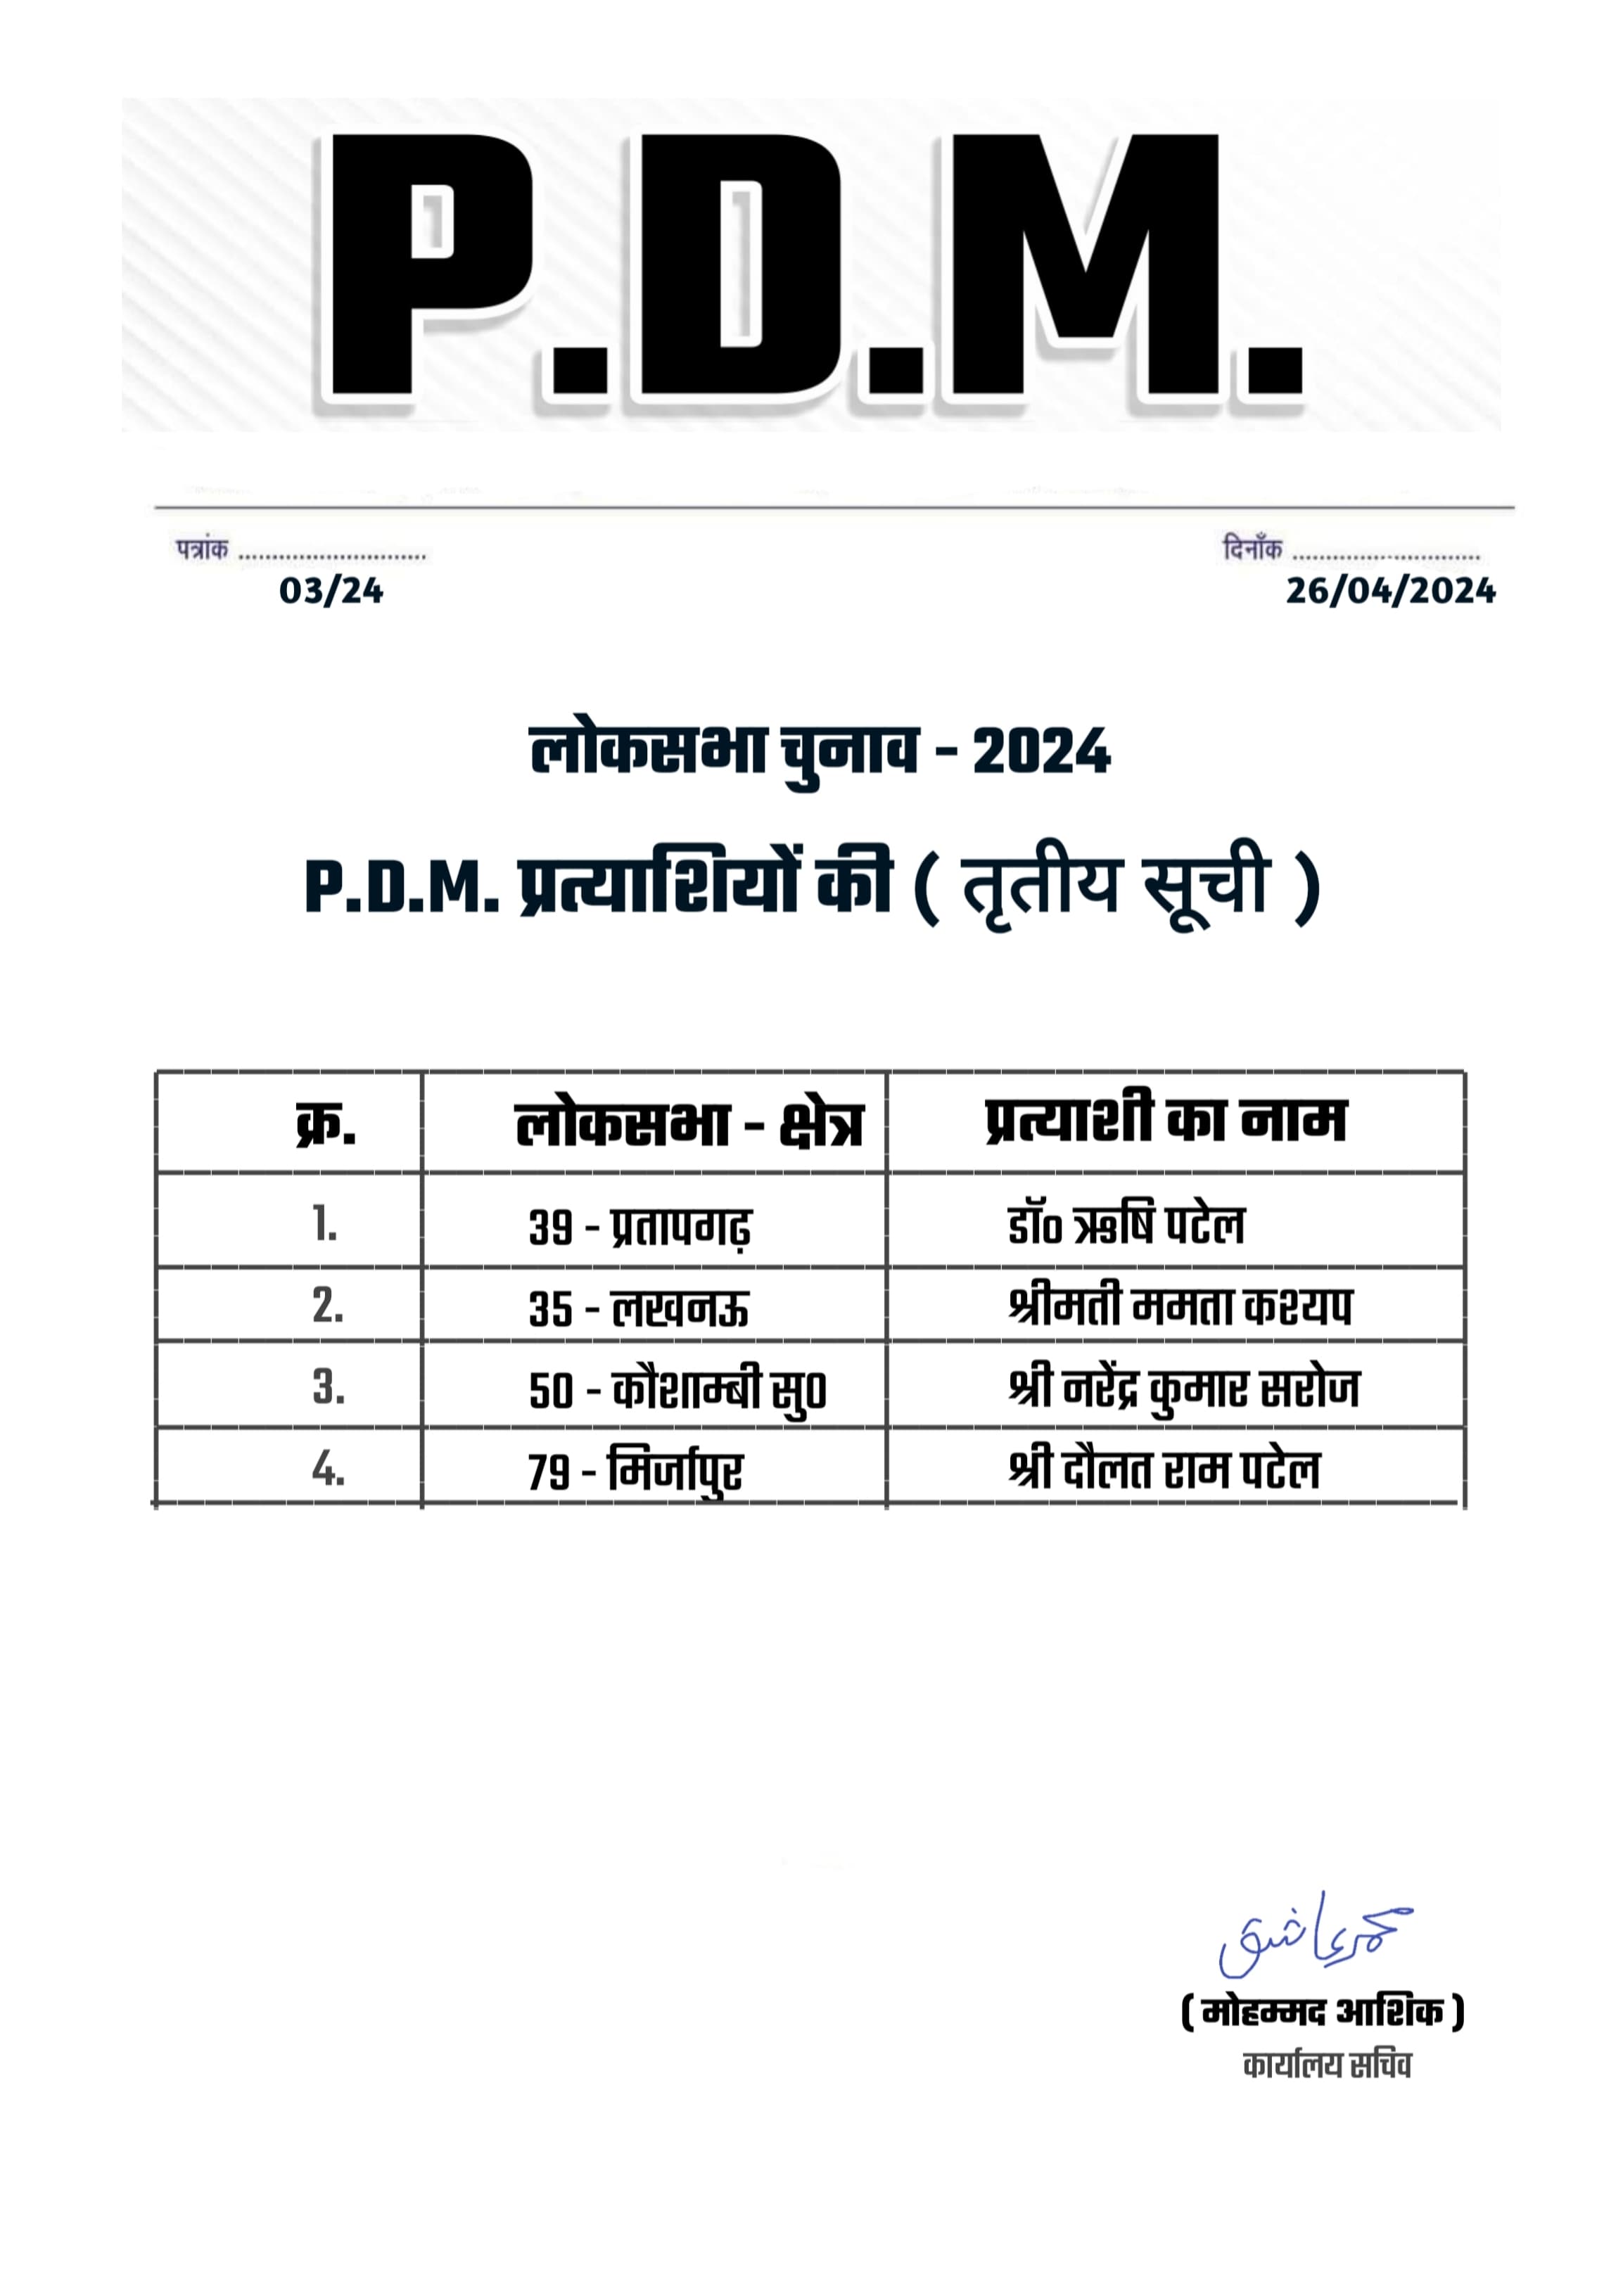 Lok Sabha Election 2024: ओवैसी-पल्लवी पटेल के PDM मोर्चे की तीसरी लिस्ट जारी, अनुप्रिया पटेल के खिलाफ इन्हें दिया टिकट